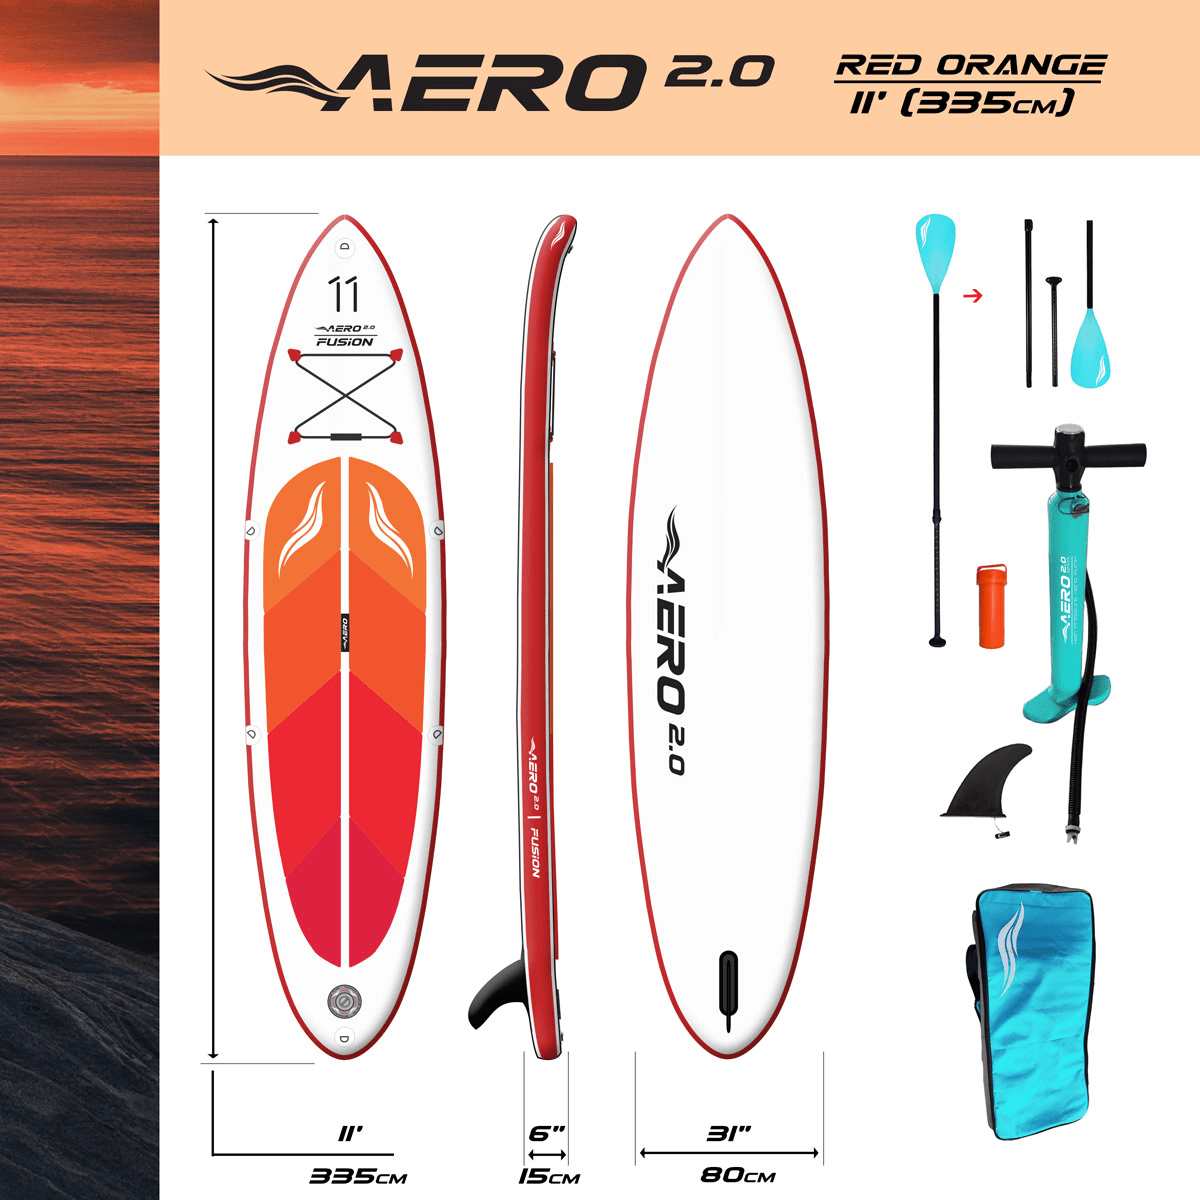 aero-20-red-orange-11-fusion-sup-board-complekt